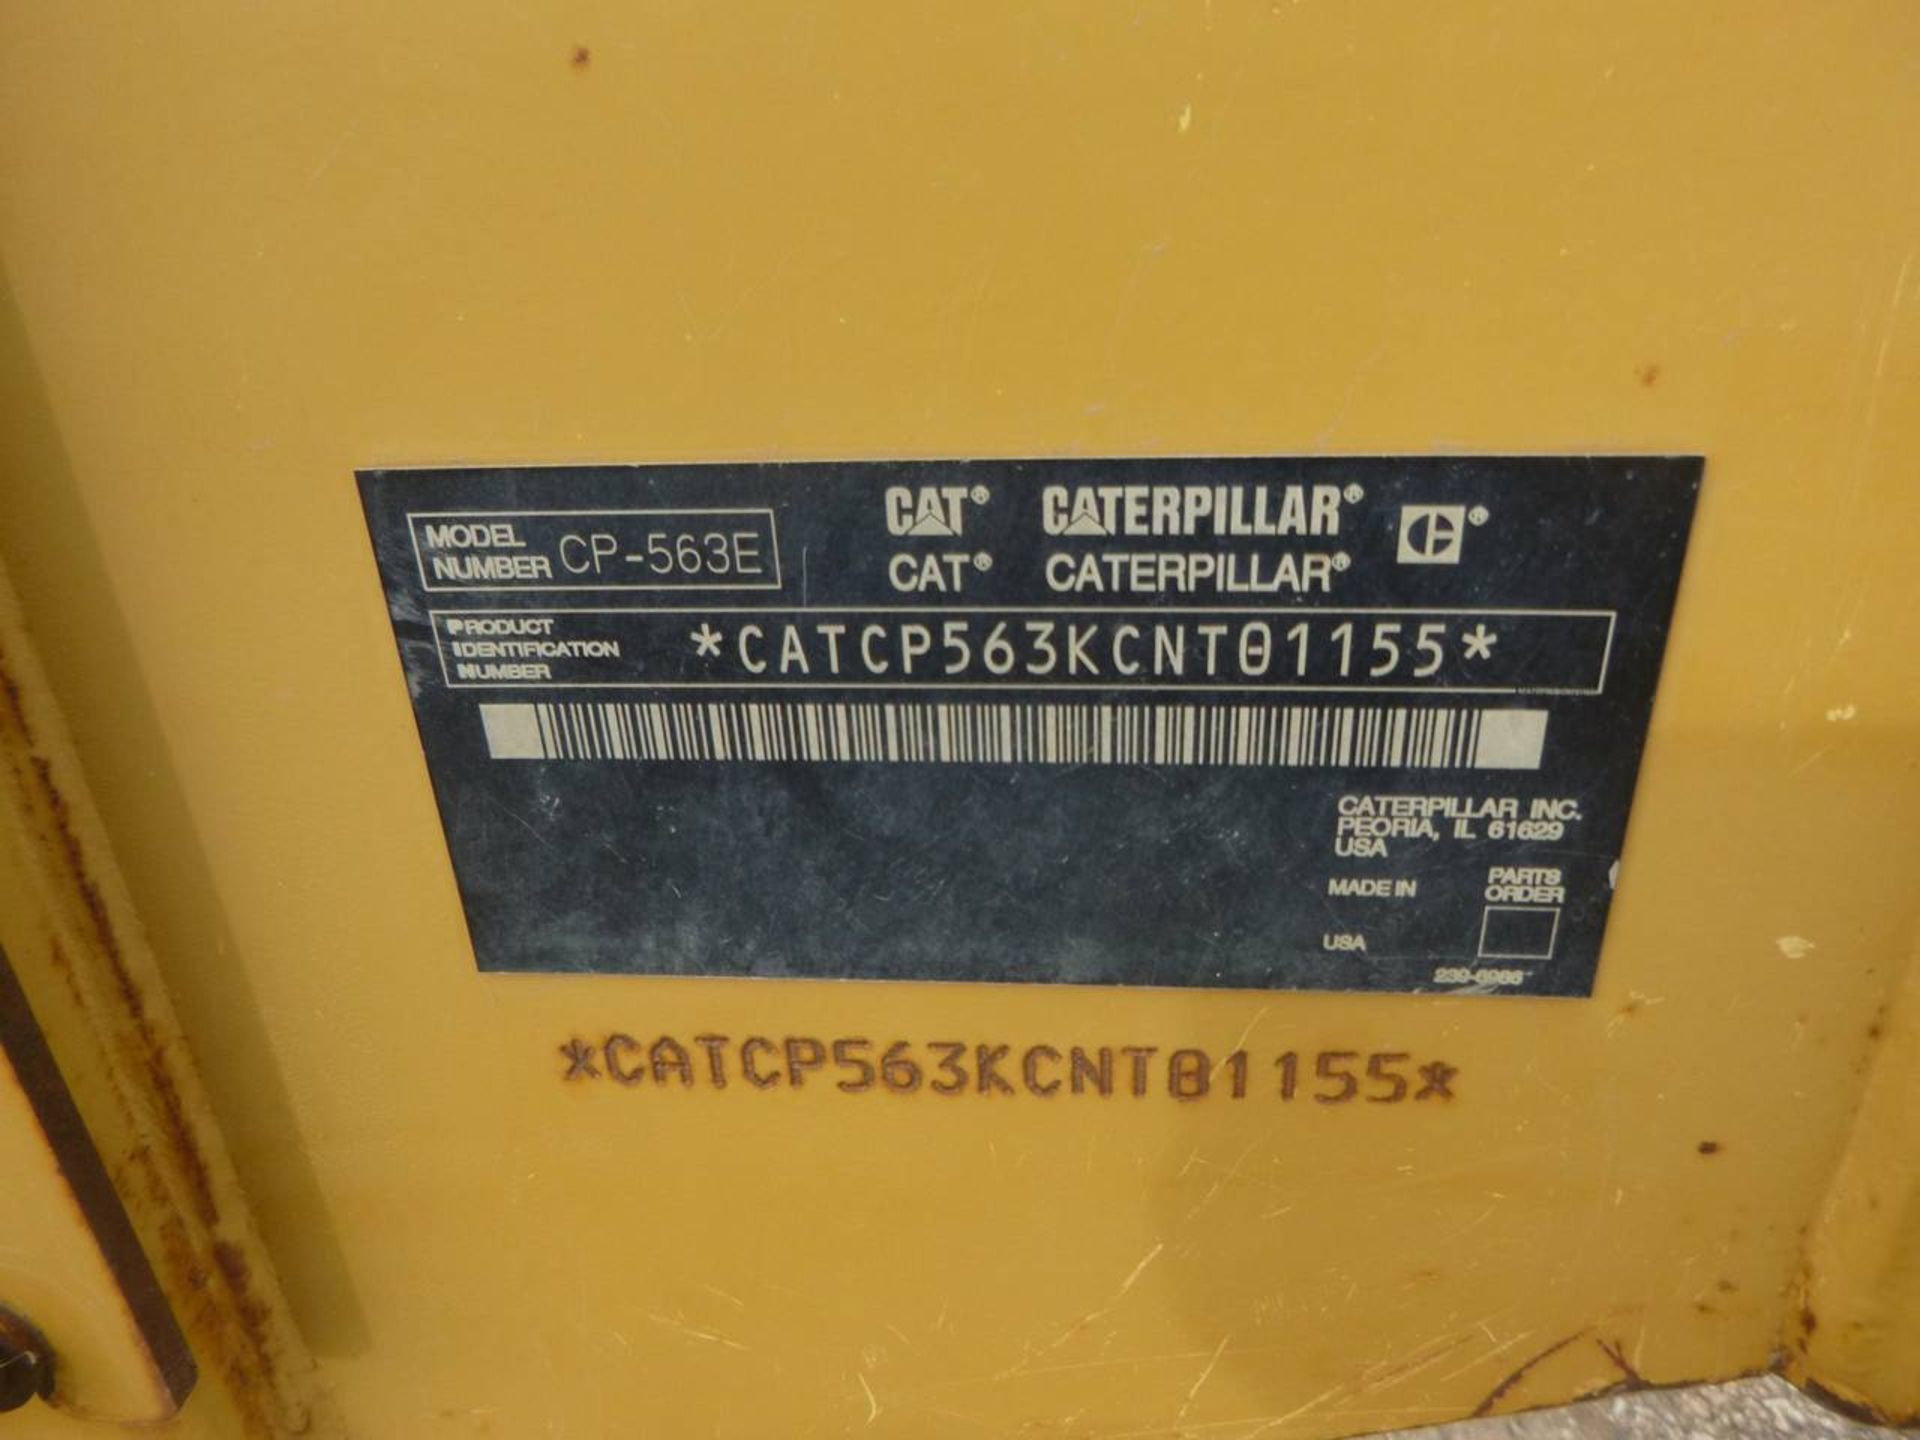 2006 Caterpillar CP-563E Compactor - Image 9 of 9